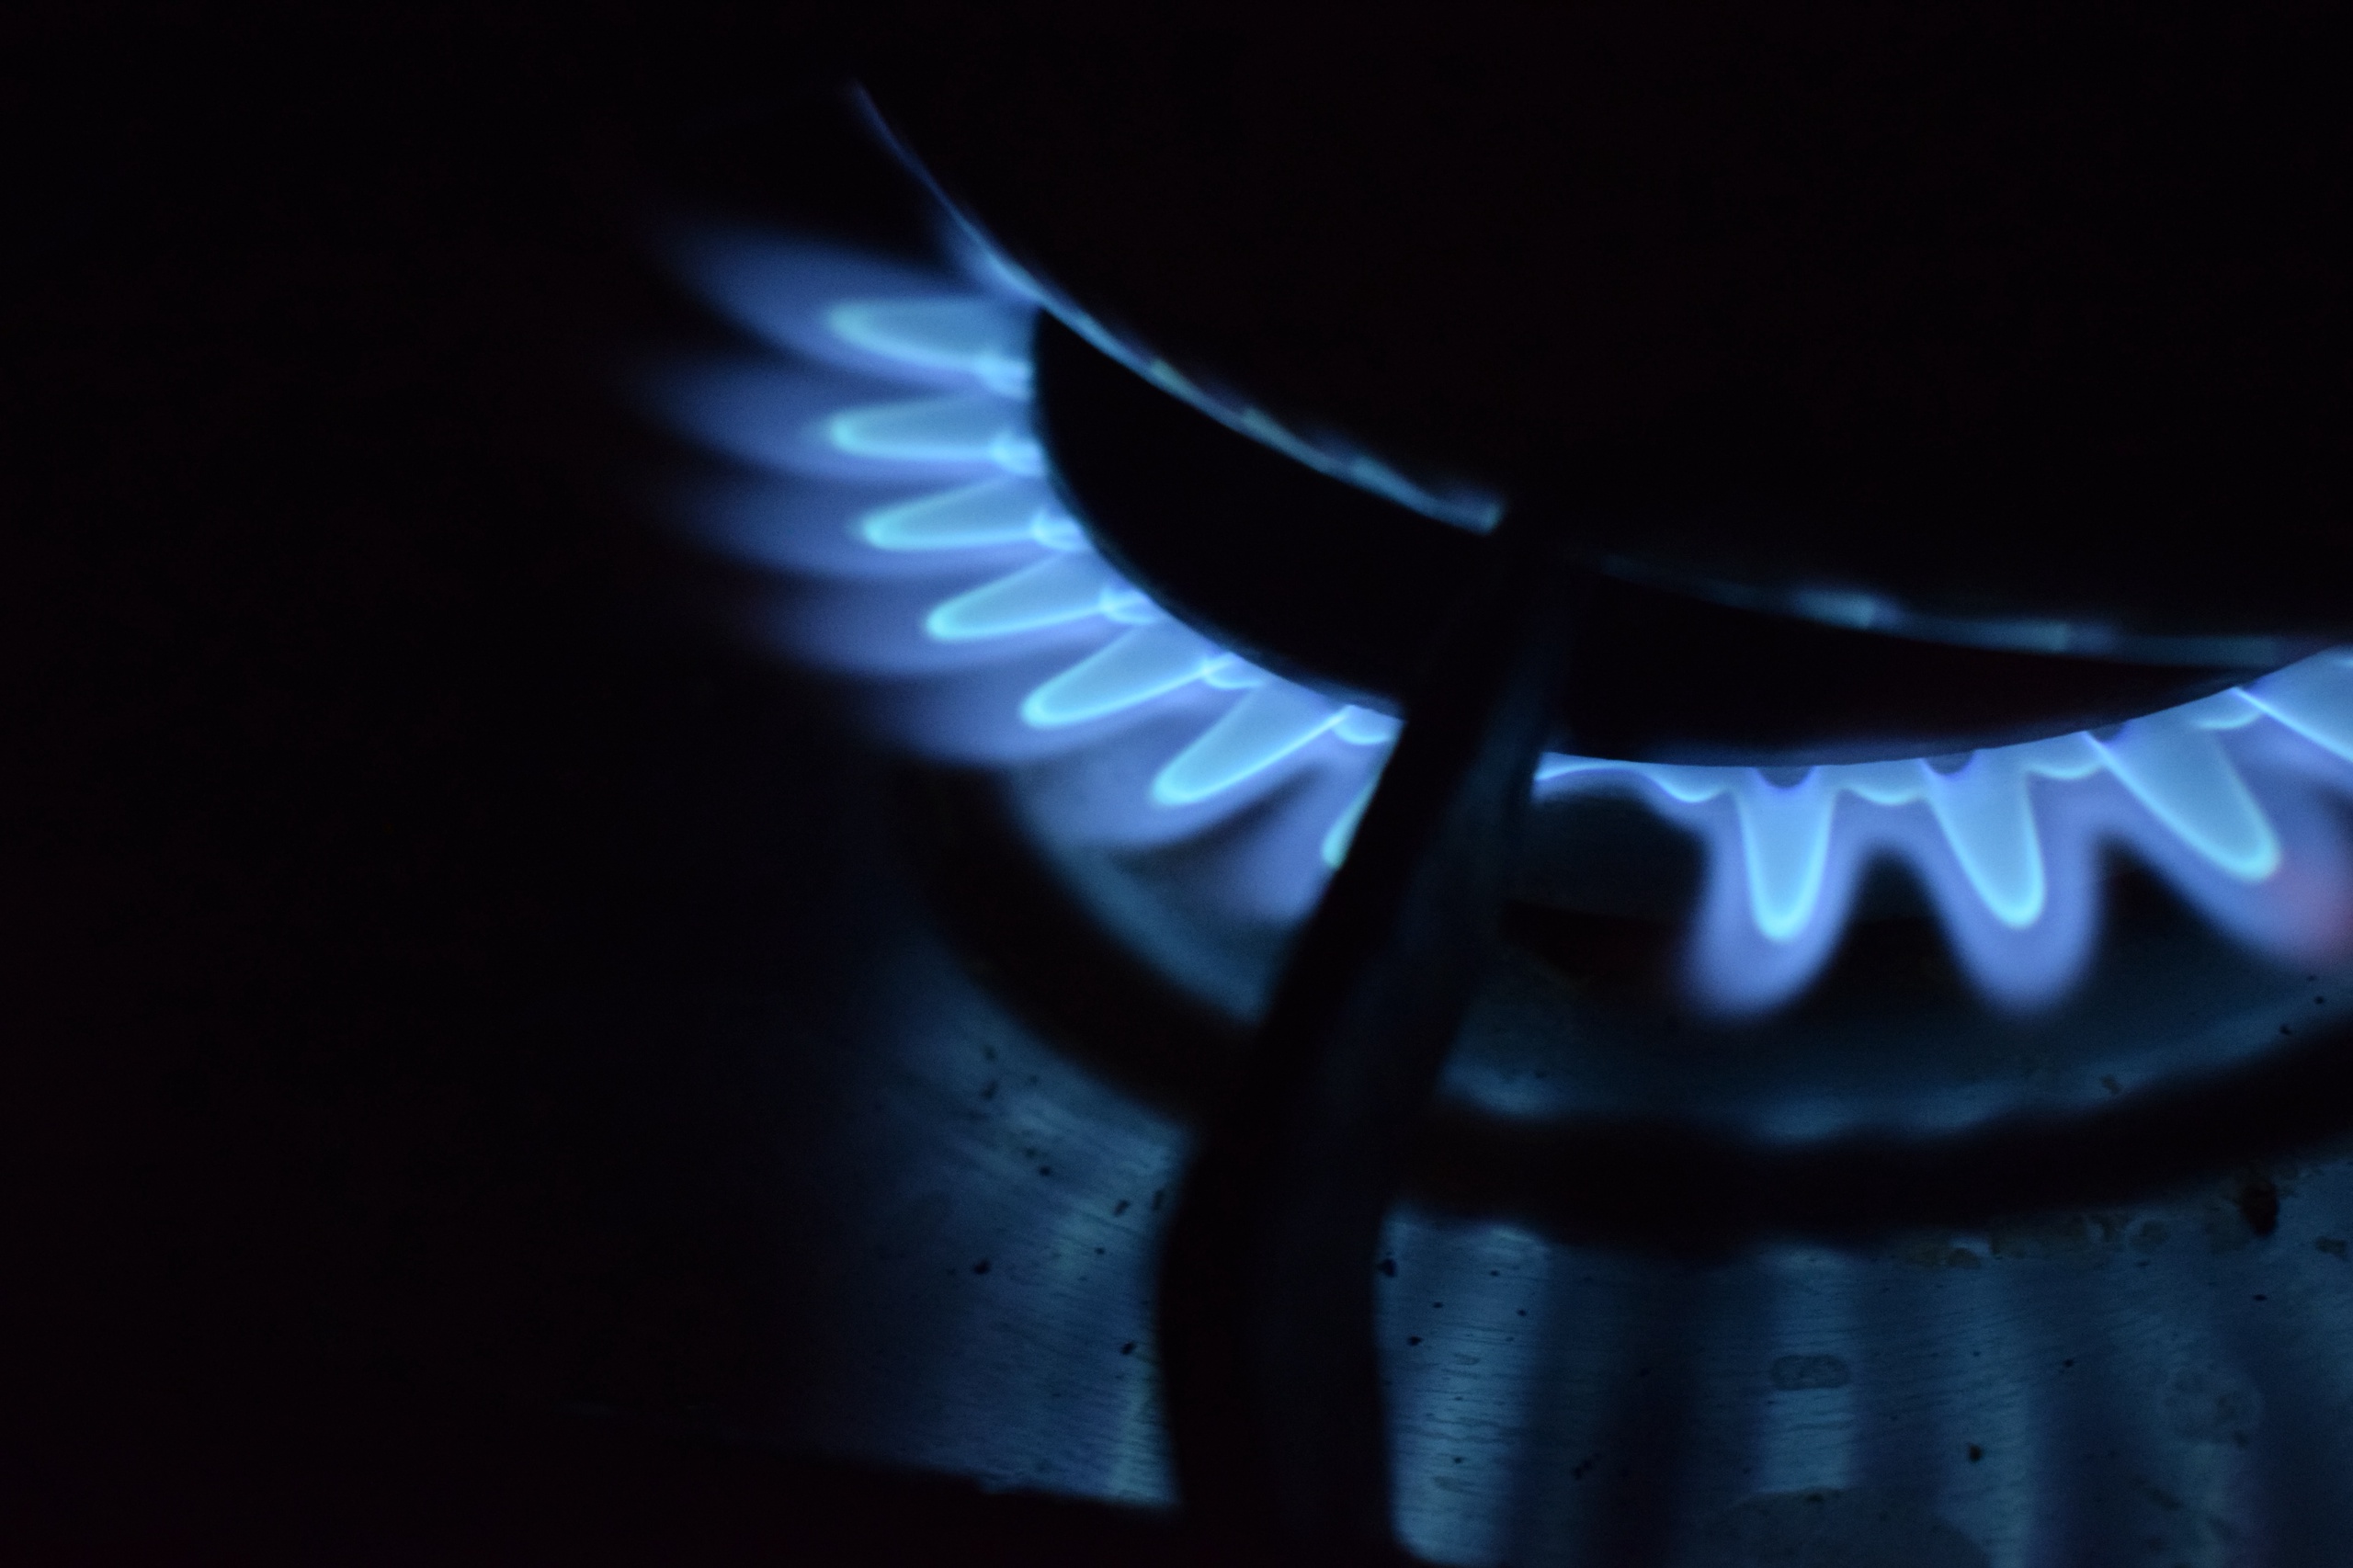 De Europese gasprijs is verder gestegen vandwege de staking bij belangrijke productiefaciliteiten voor lng in Australië en door onderhoudswerkzaamheden aan Noorse gasvelden. De prijs op de Amsterdamse gasbeurs steeg met ongeveer 8 procent tot meer dan 37 euro per megawattuur. Het is de derde dag op rij dat de gasprijs stijgt. 